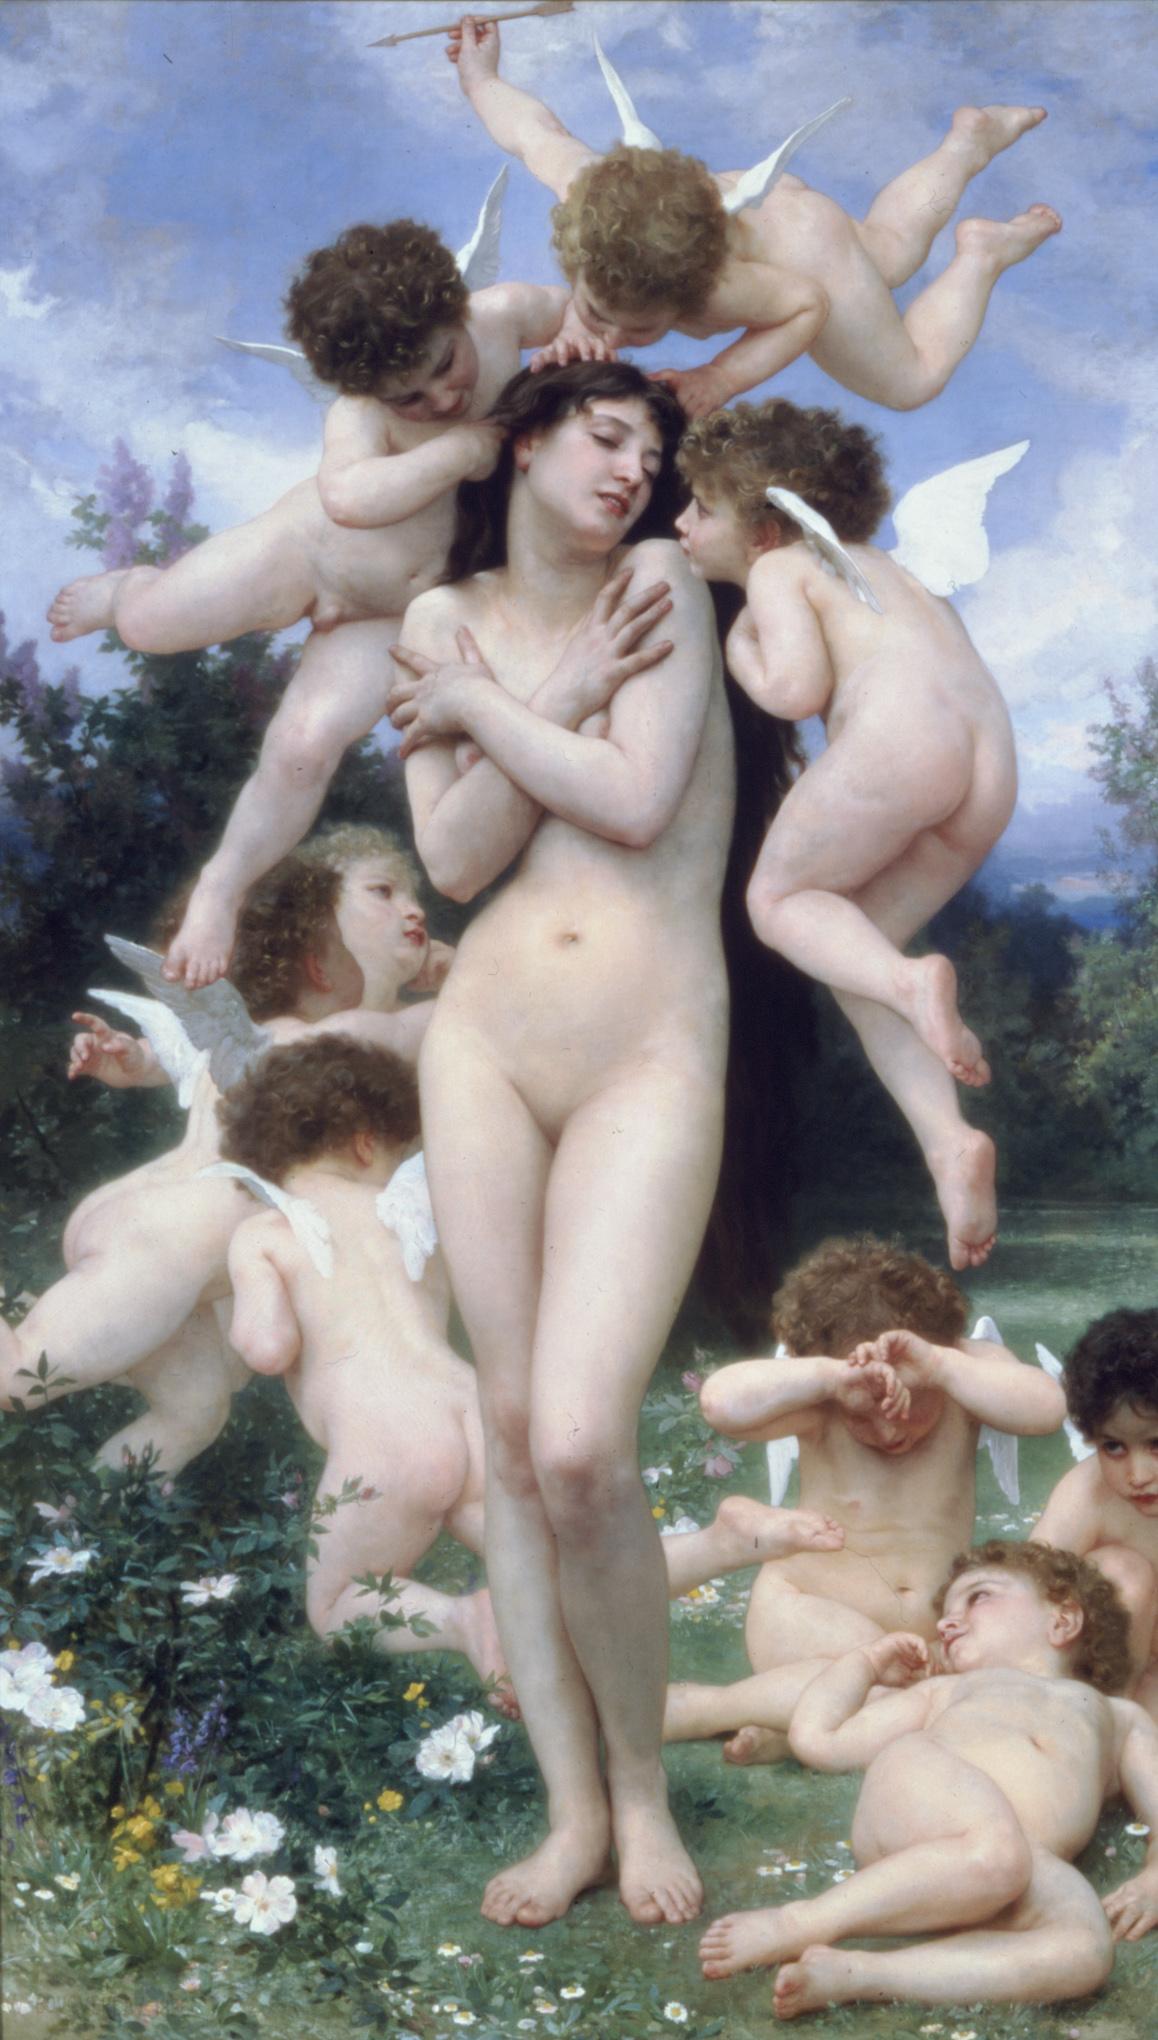 Le Retour du Printemps (1886) : William Bouguereau (1825 – 1905), peintre français de style académique, a usé souvent de thèmes allégoriques 